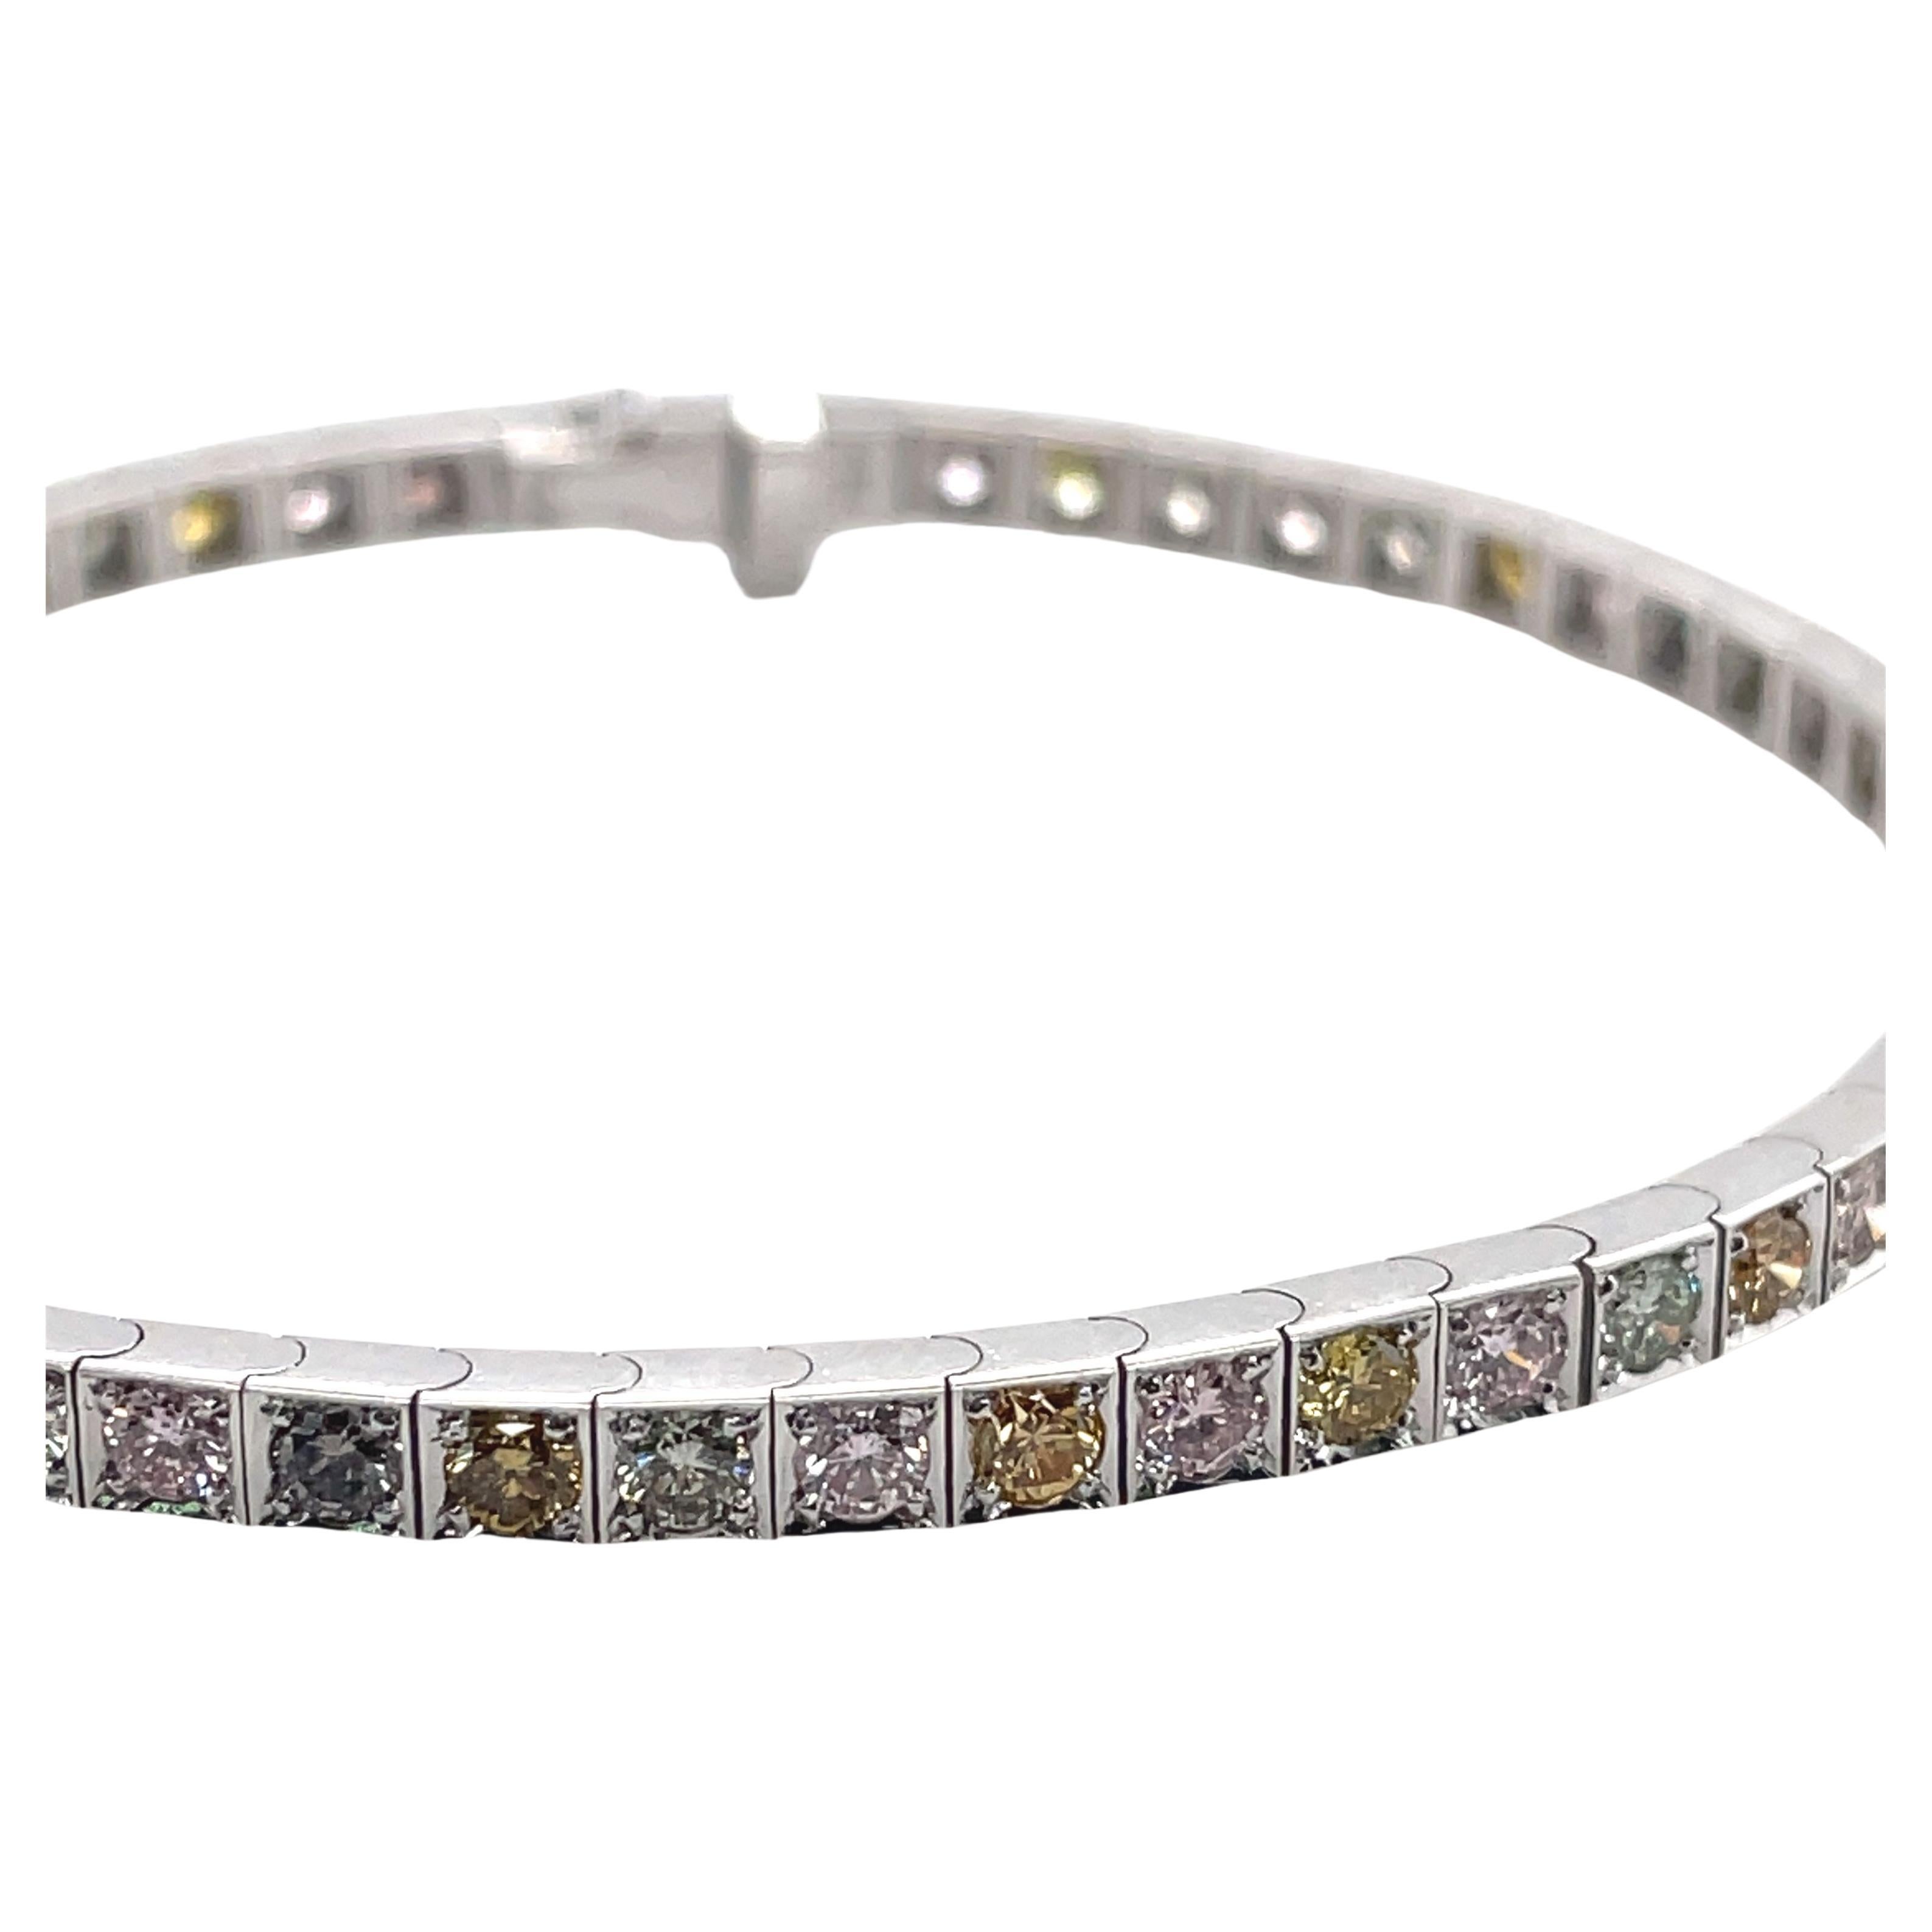  Bracelet tennis en or blanc 18 carats avec diamants multicolores de 3,24 carats, certifié AIG